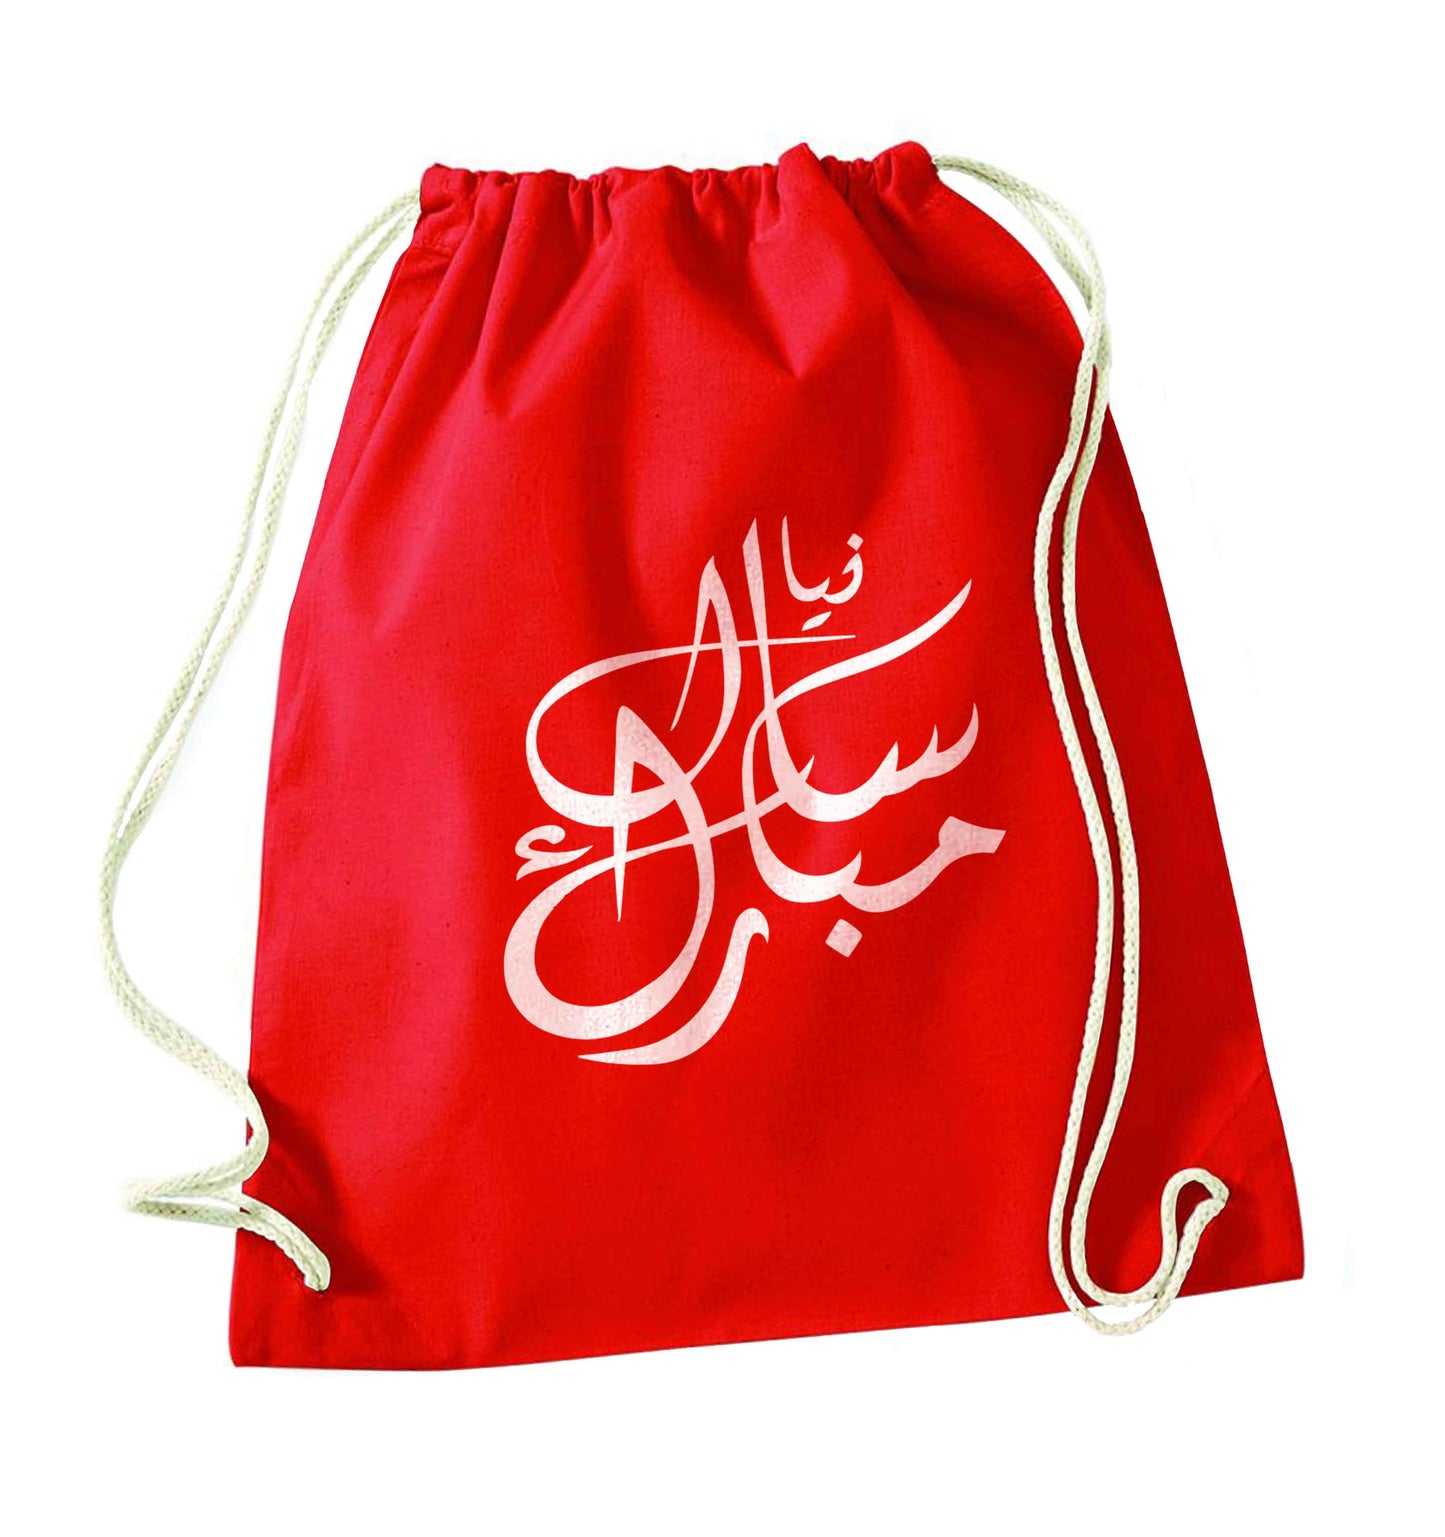 Urdu Naya saal mubarak red drawstring bag 